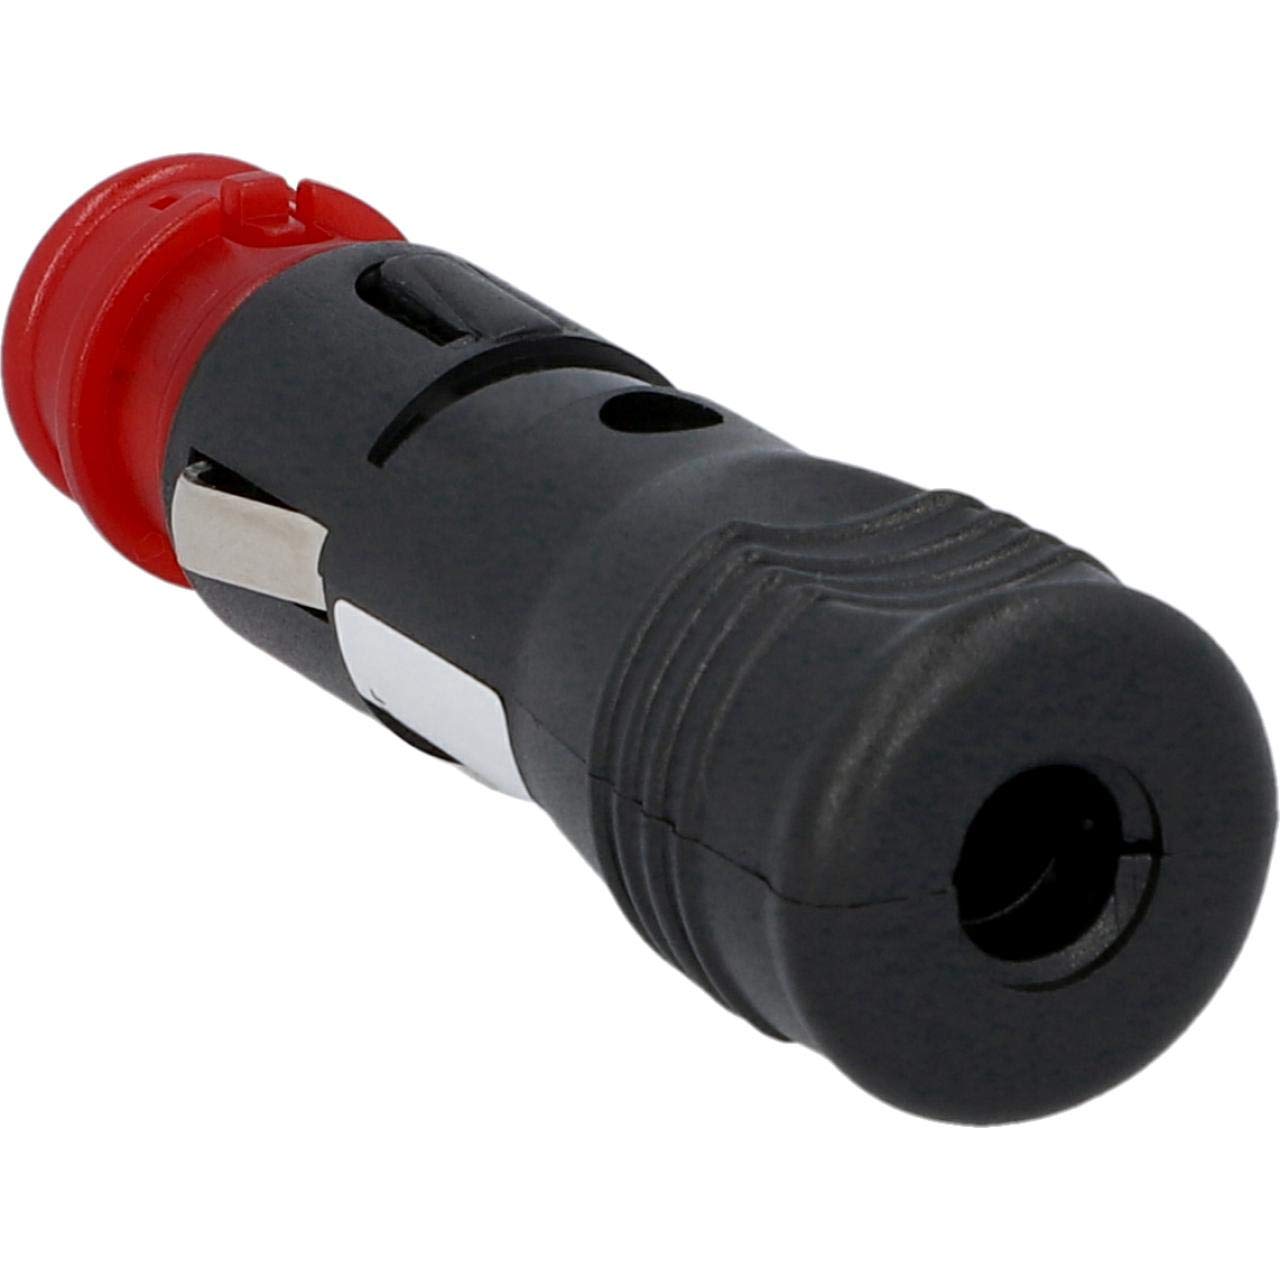 Cartrend 10456 Universal-Stecker passend für alle Zigarettenanzünder und Steckdosen nach DIN ISO 4165, 8000 mA von cartrend